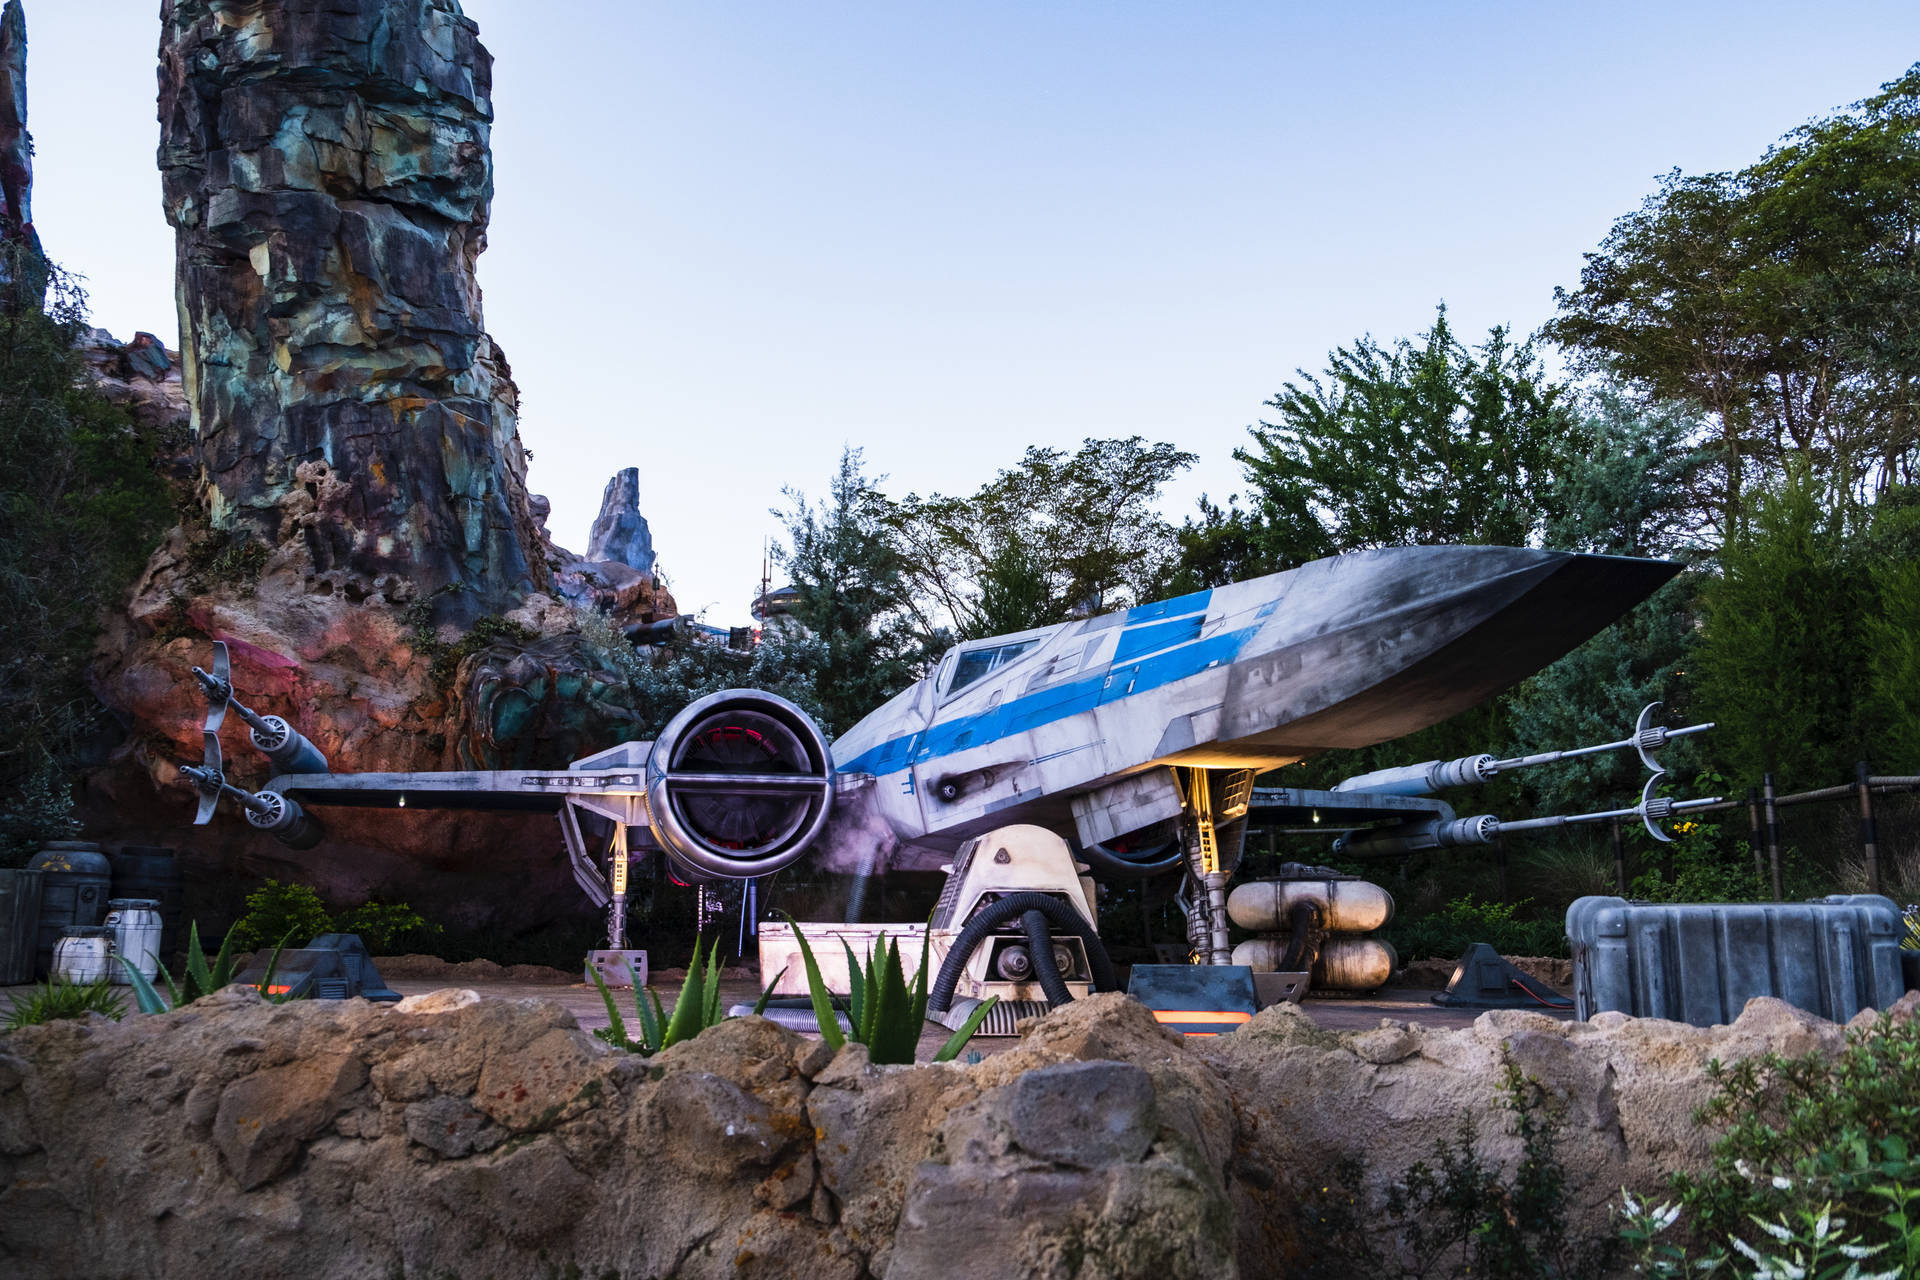 Star Wars X Wing Fighter at Disneyland Resort wallpaper